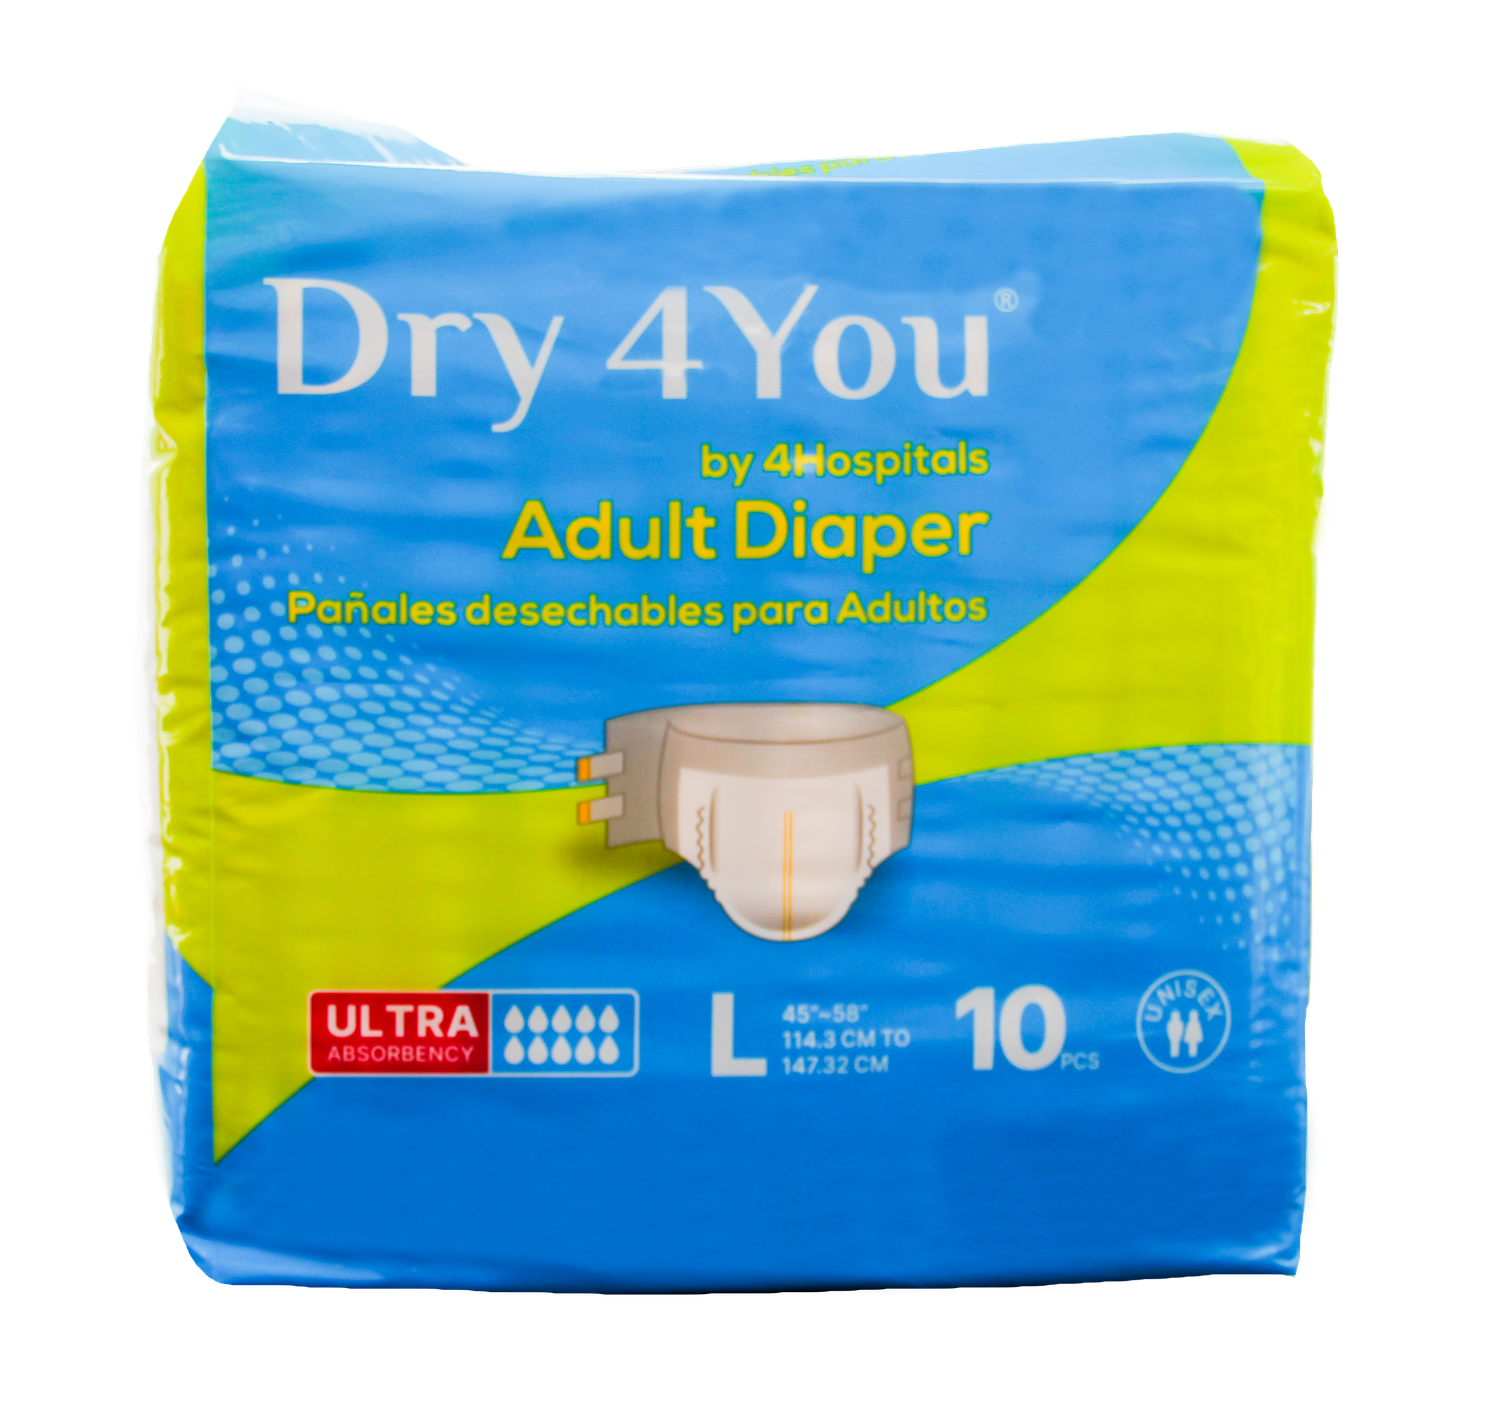 Pañal de Adulto - Dry 4You - 10 Unidades